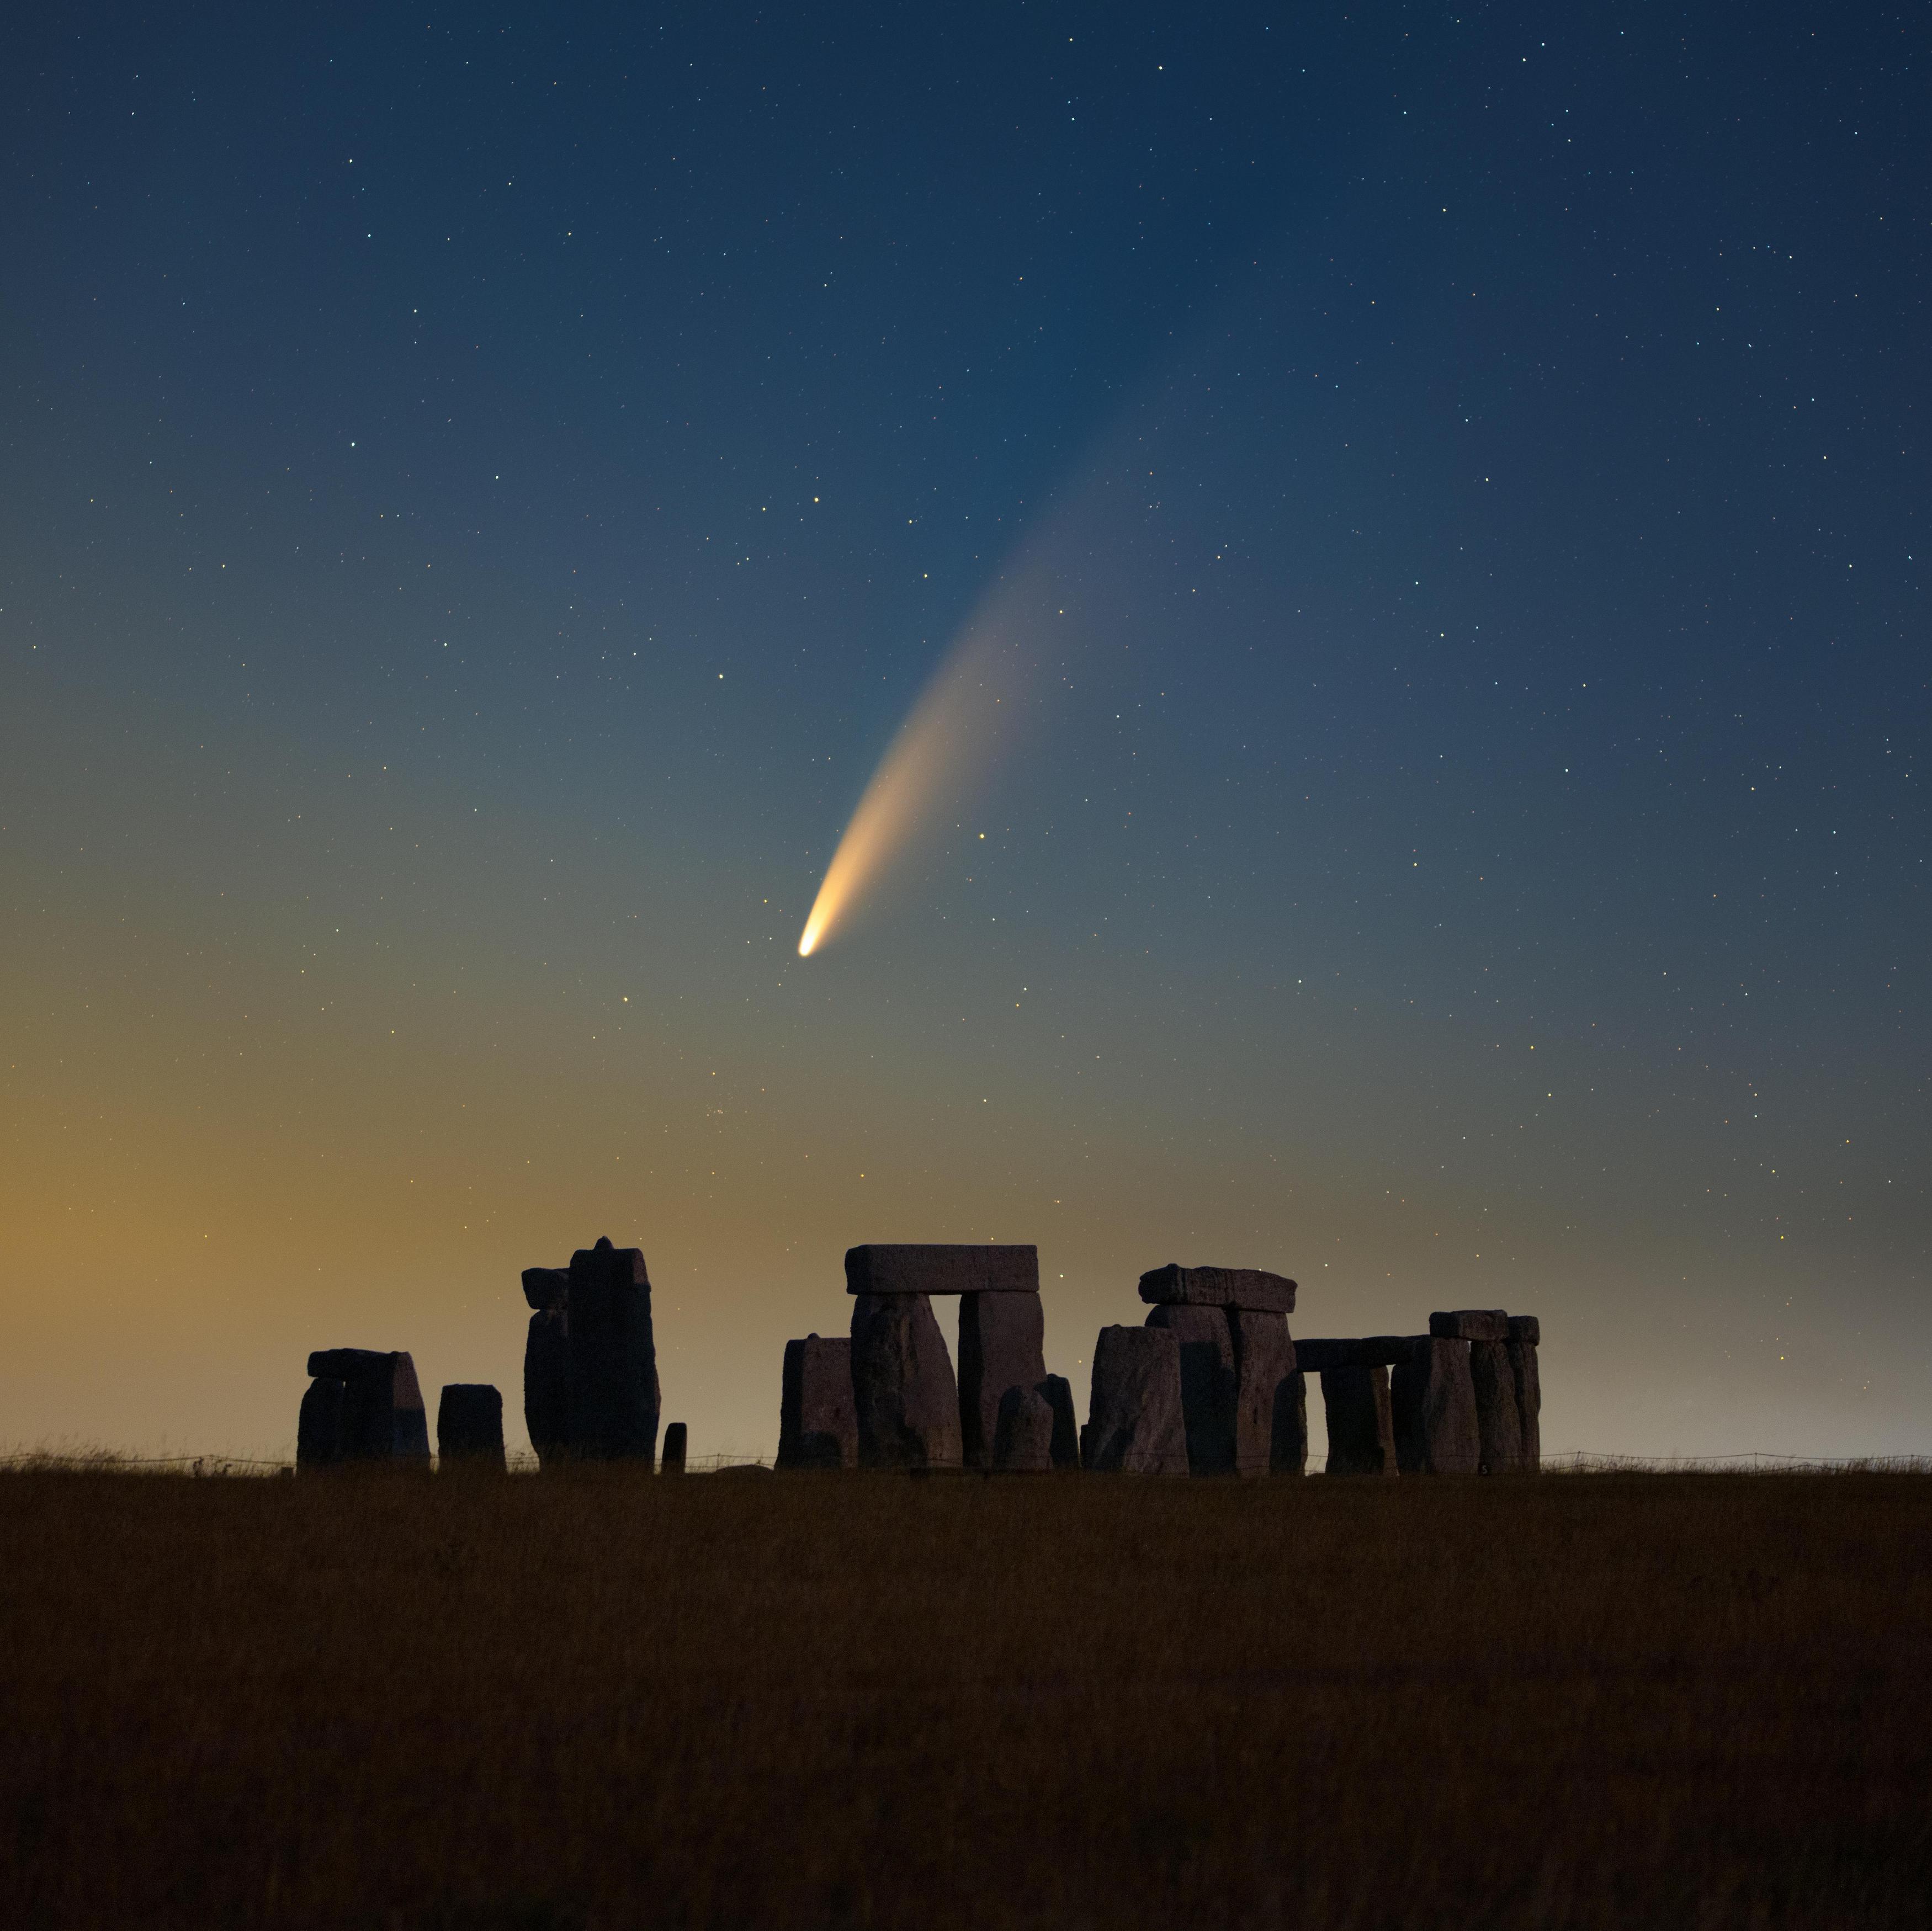 NEOWISE over Stonehenge